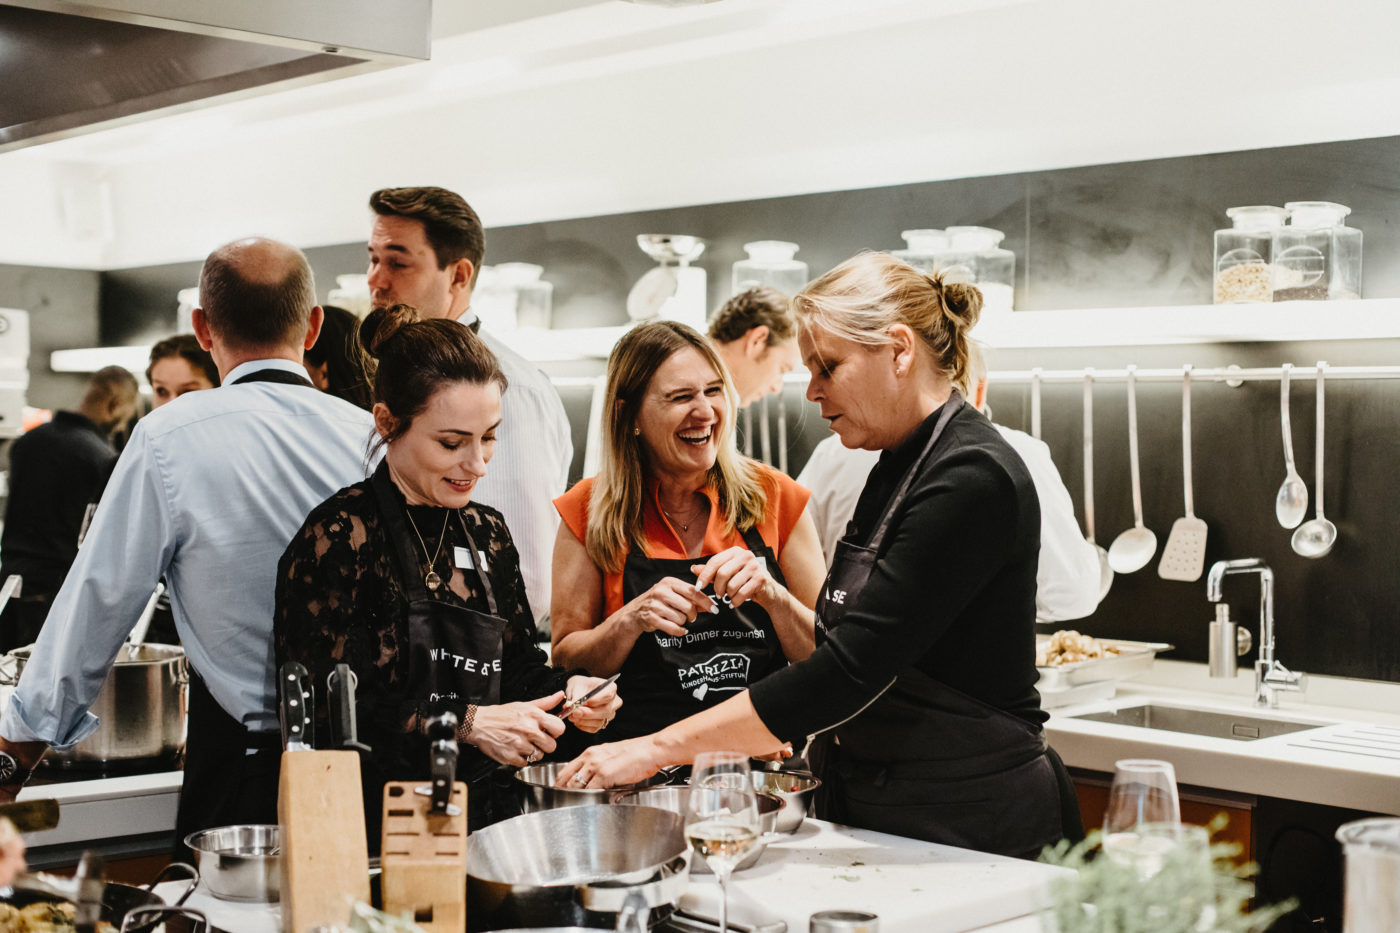 Event PATRIZIA Charity Cooking 2018 Frankfurt mit White & Case LLP, Gäste lachen mit Schürze